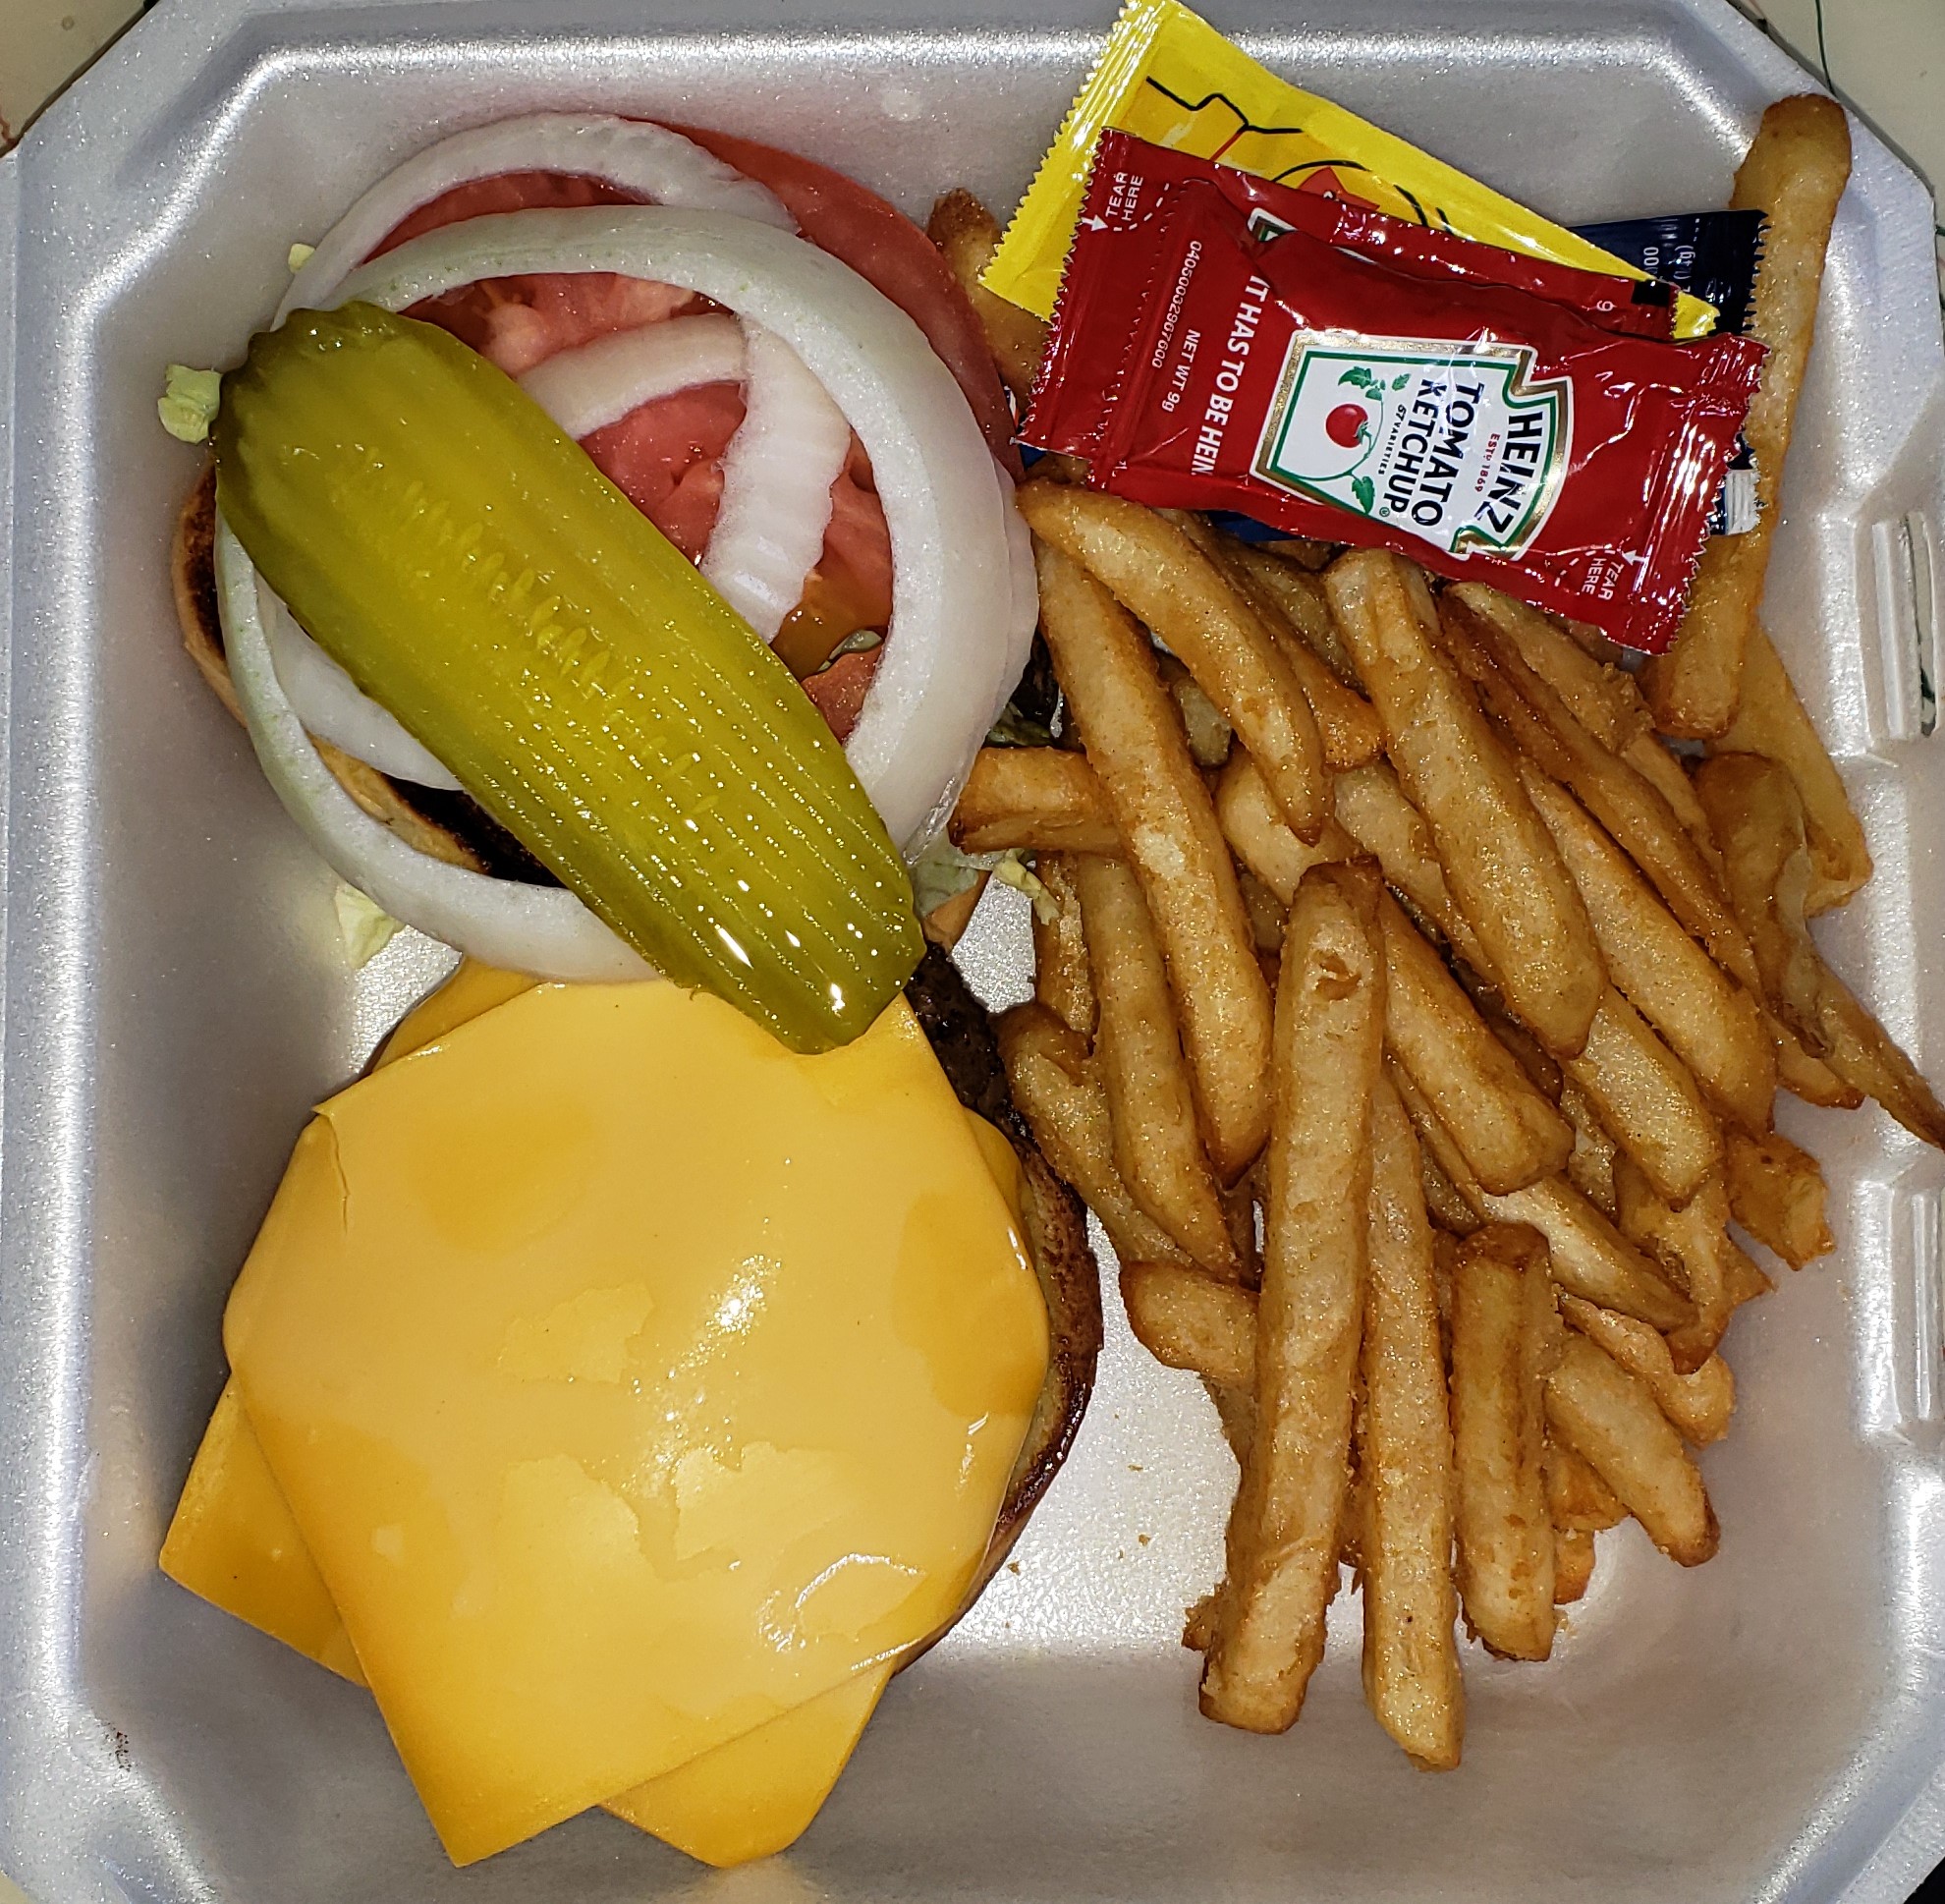 Cheese Burger - $9.95